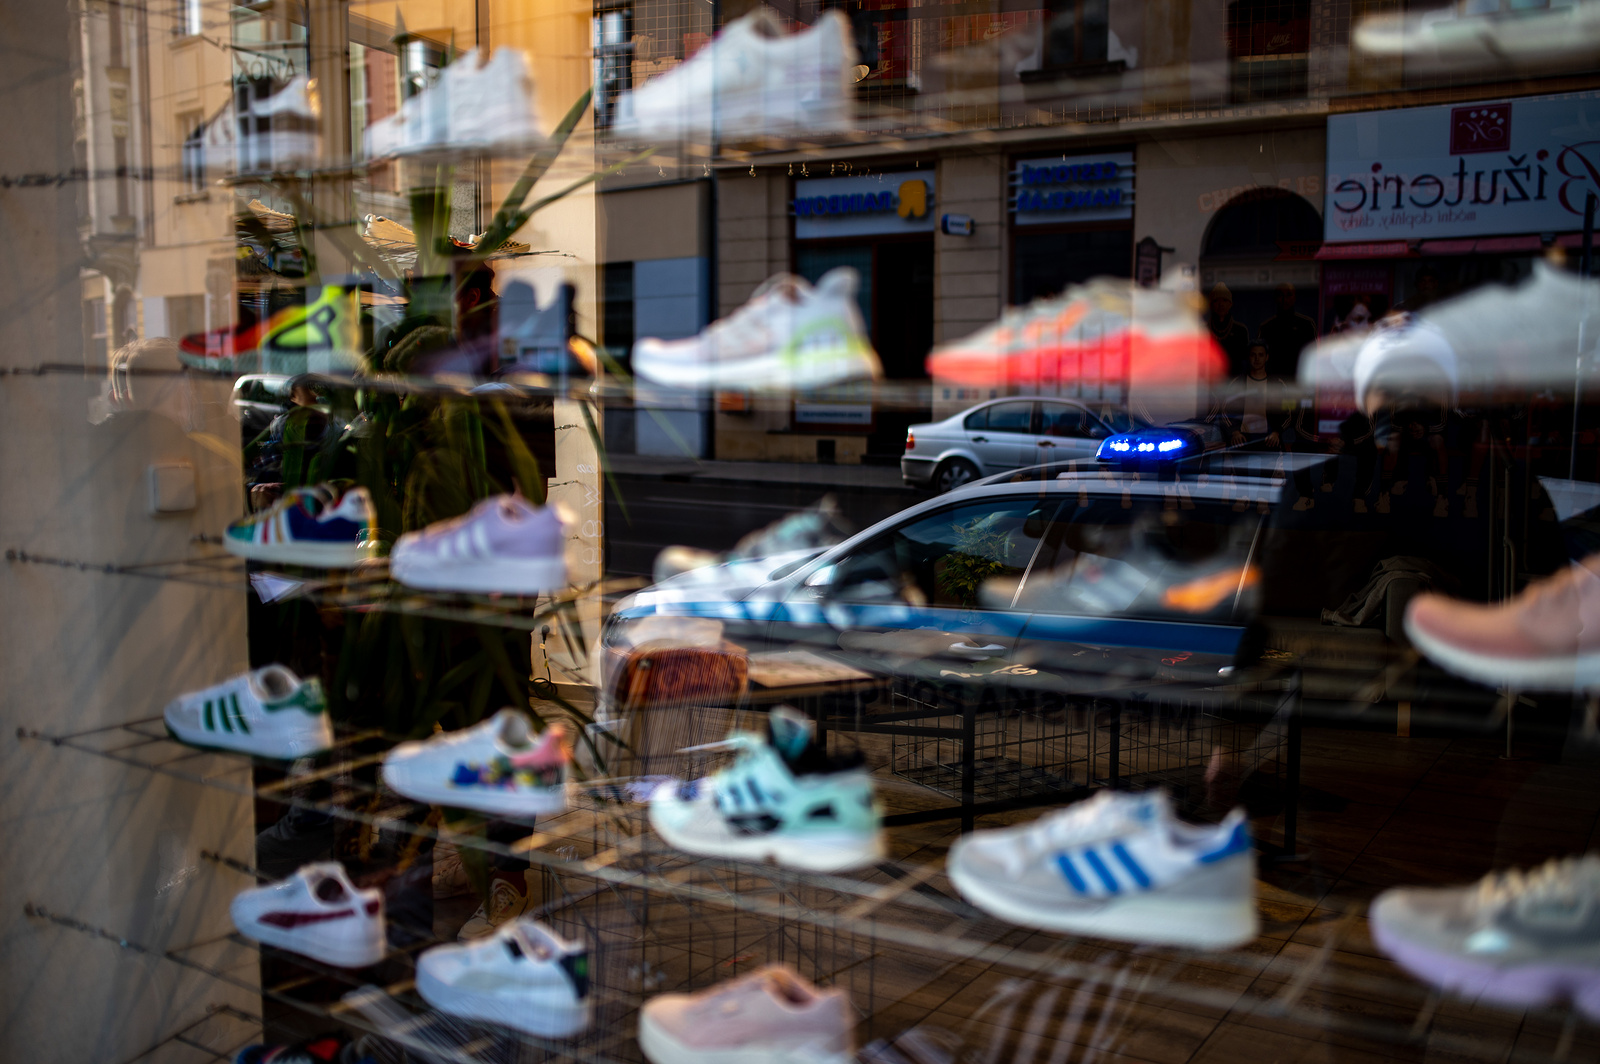 Fotogalerie: Zákazníci čekají na prodej limitované edice bot Nike Air Jordan  1 Retro High OG před prodejnou Queens na Nádražní ulici. Někteří čekali  před obchodem s peřinami a židlemi přes noc. Do